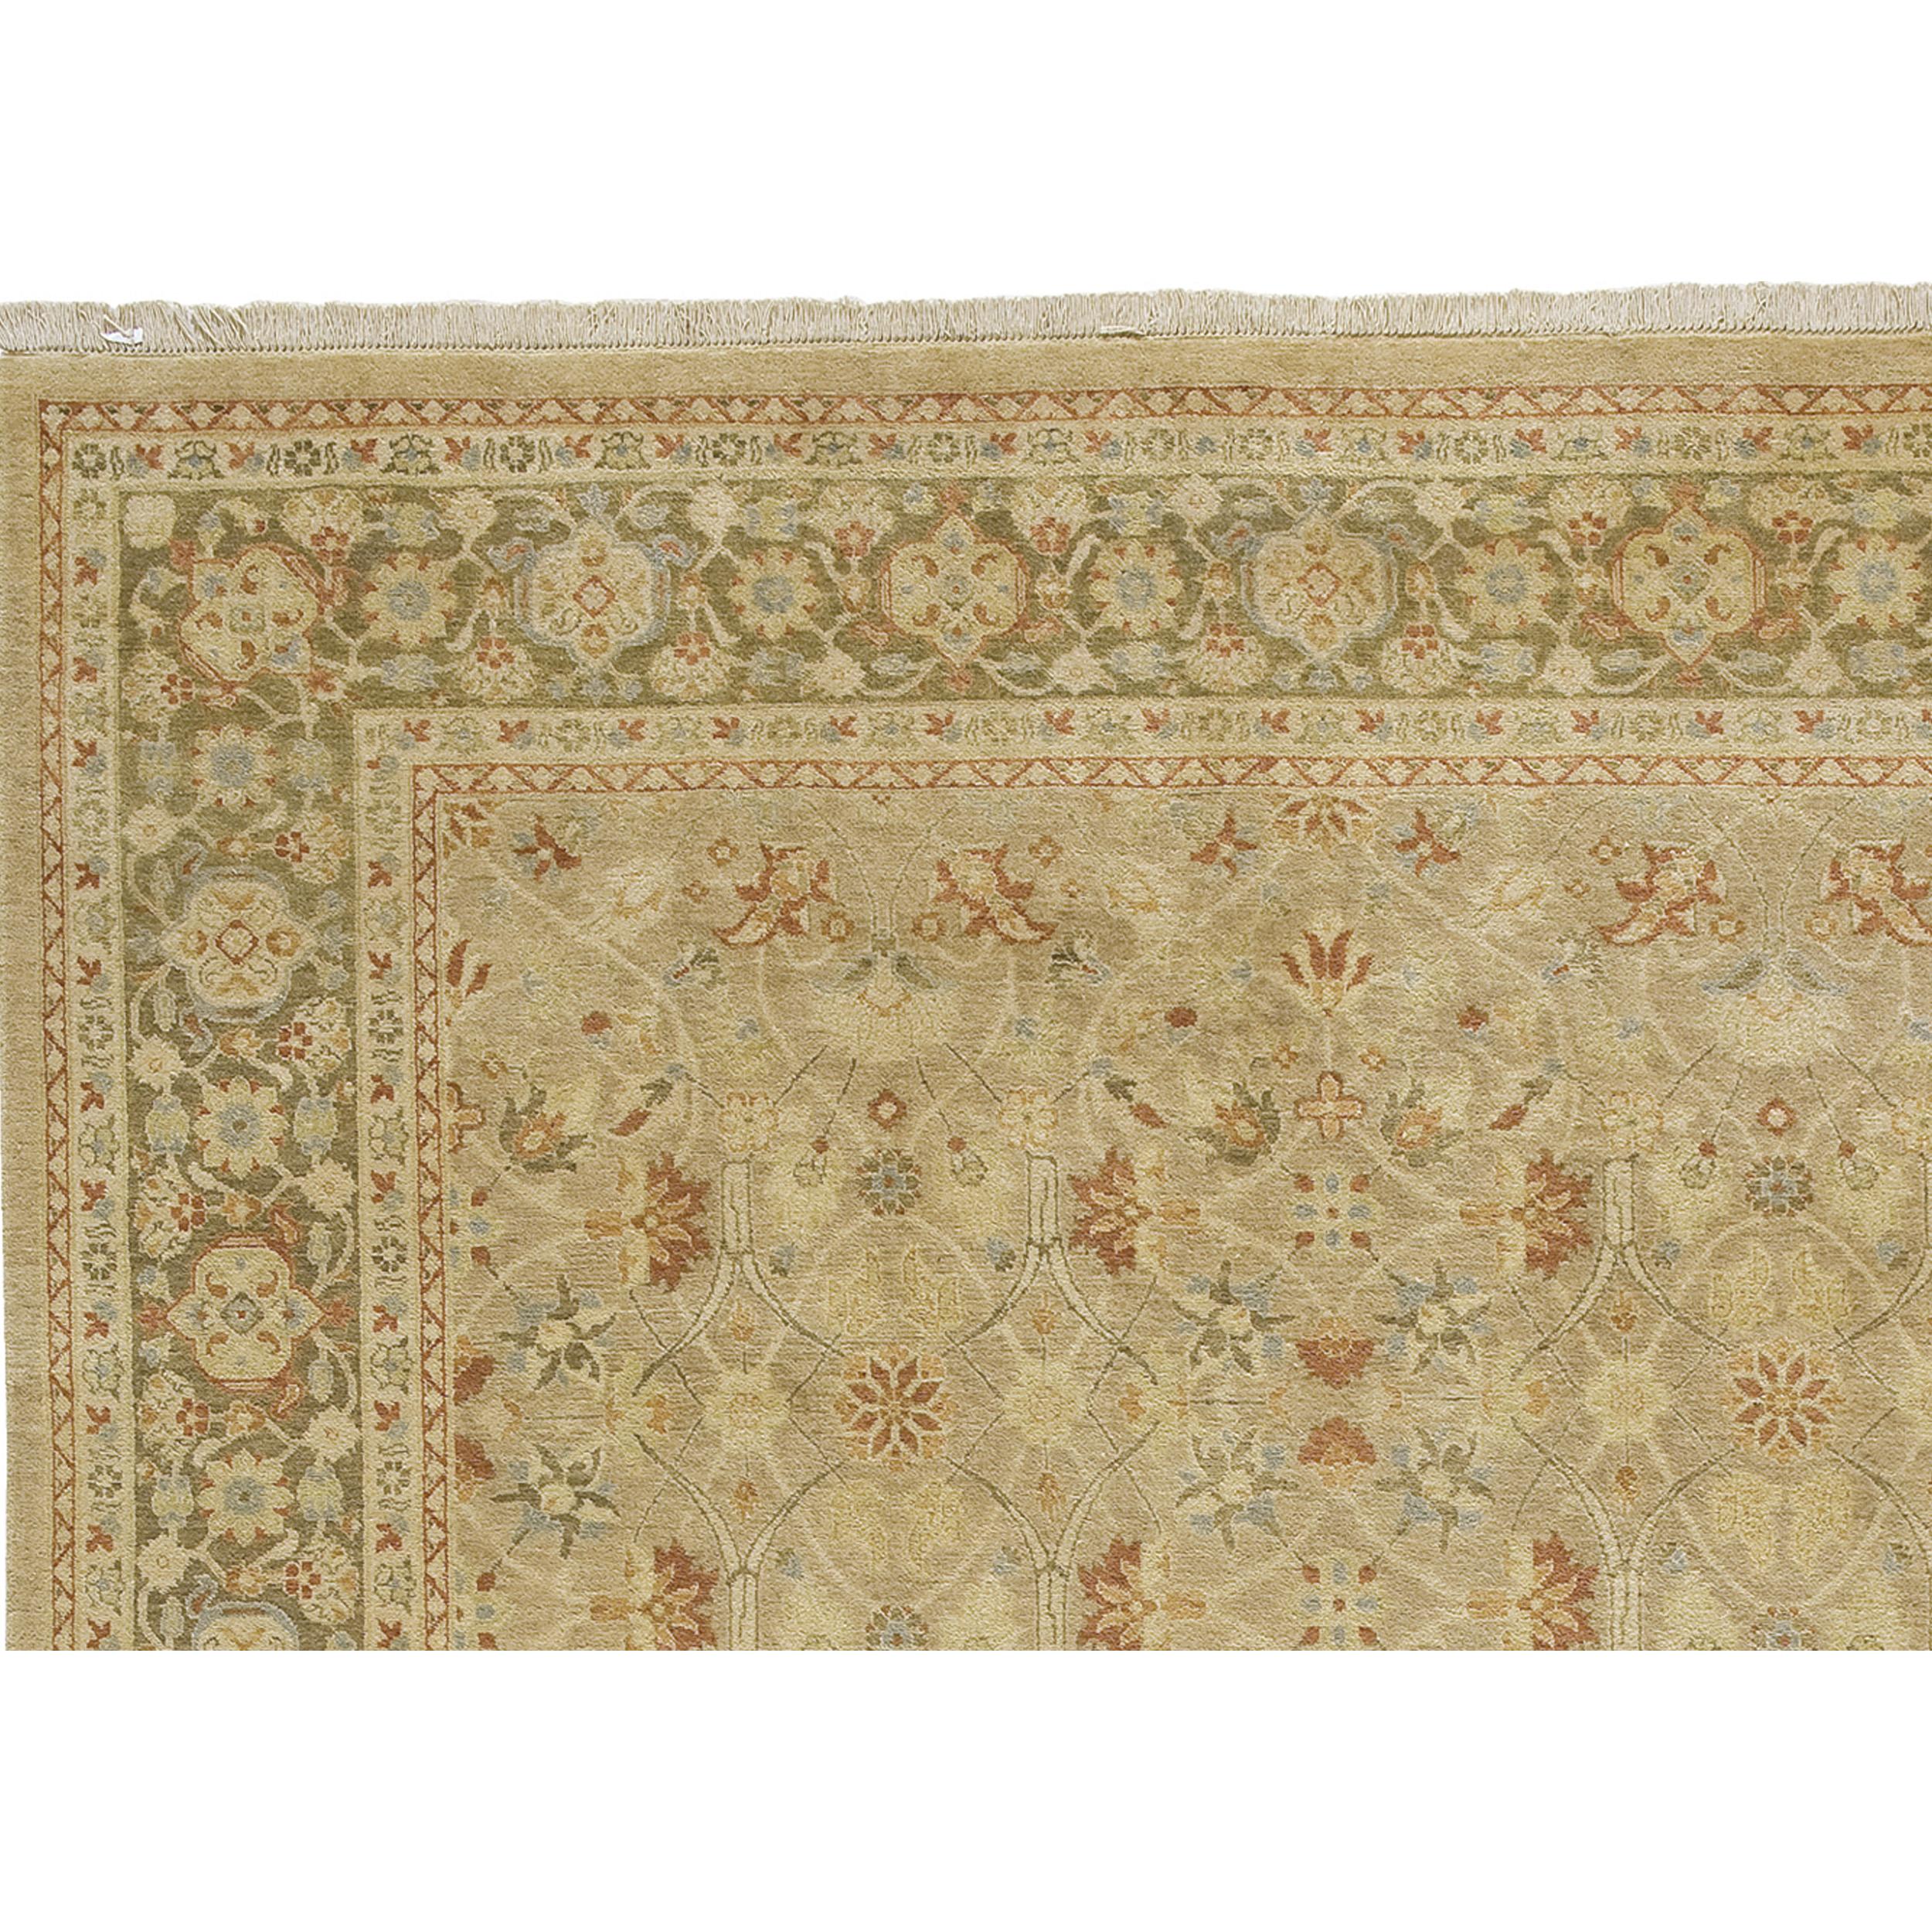 Ce tapis exquis tissé à la main provient des maîtres artisans du Pakistan, où des générations de savoir-faire en matière de tissage et une profonde appréciation de l'art de la fabrication des tapis se rejoignent. La laine utilisée est de la plus